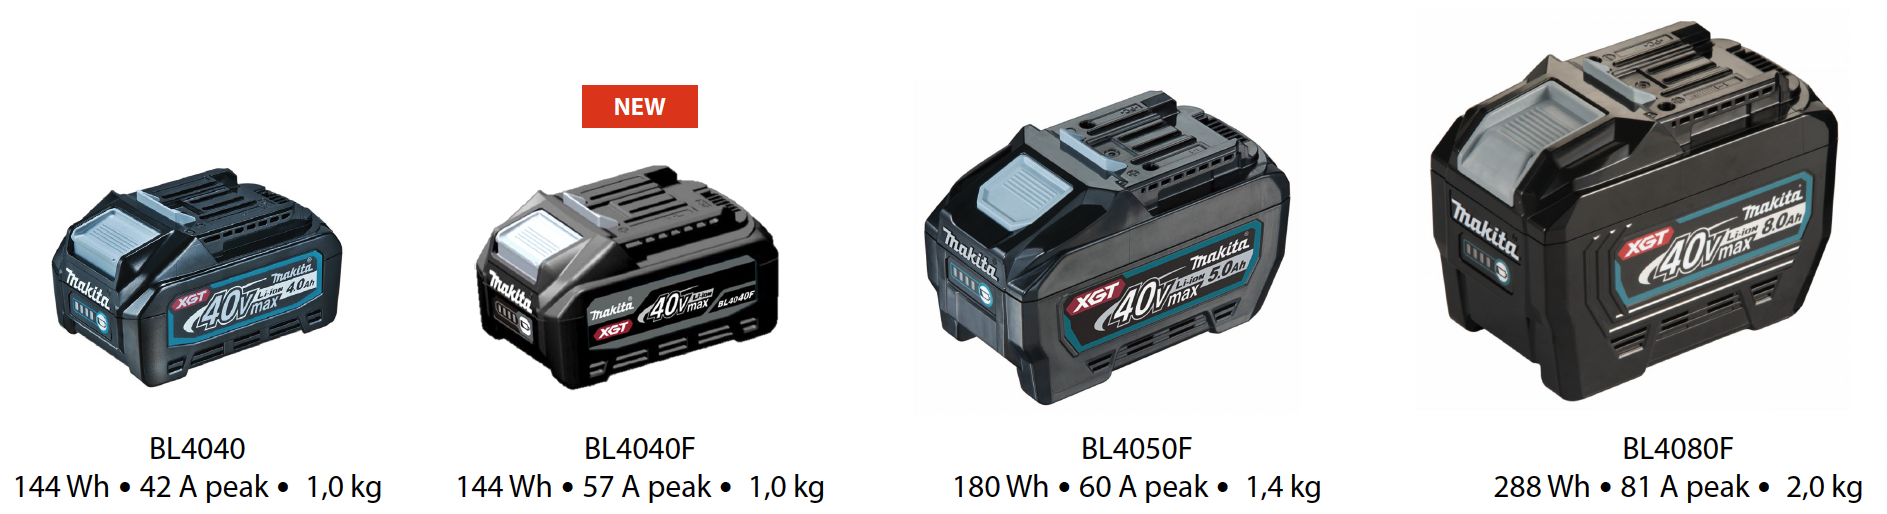 Vergelijking van BL4040F batterij met andere batterijen in het gamma 